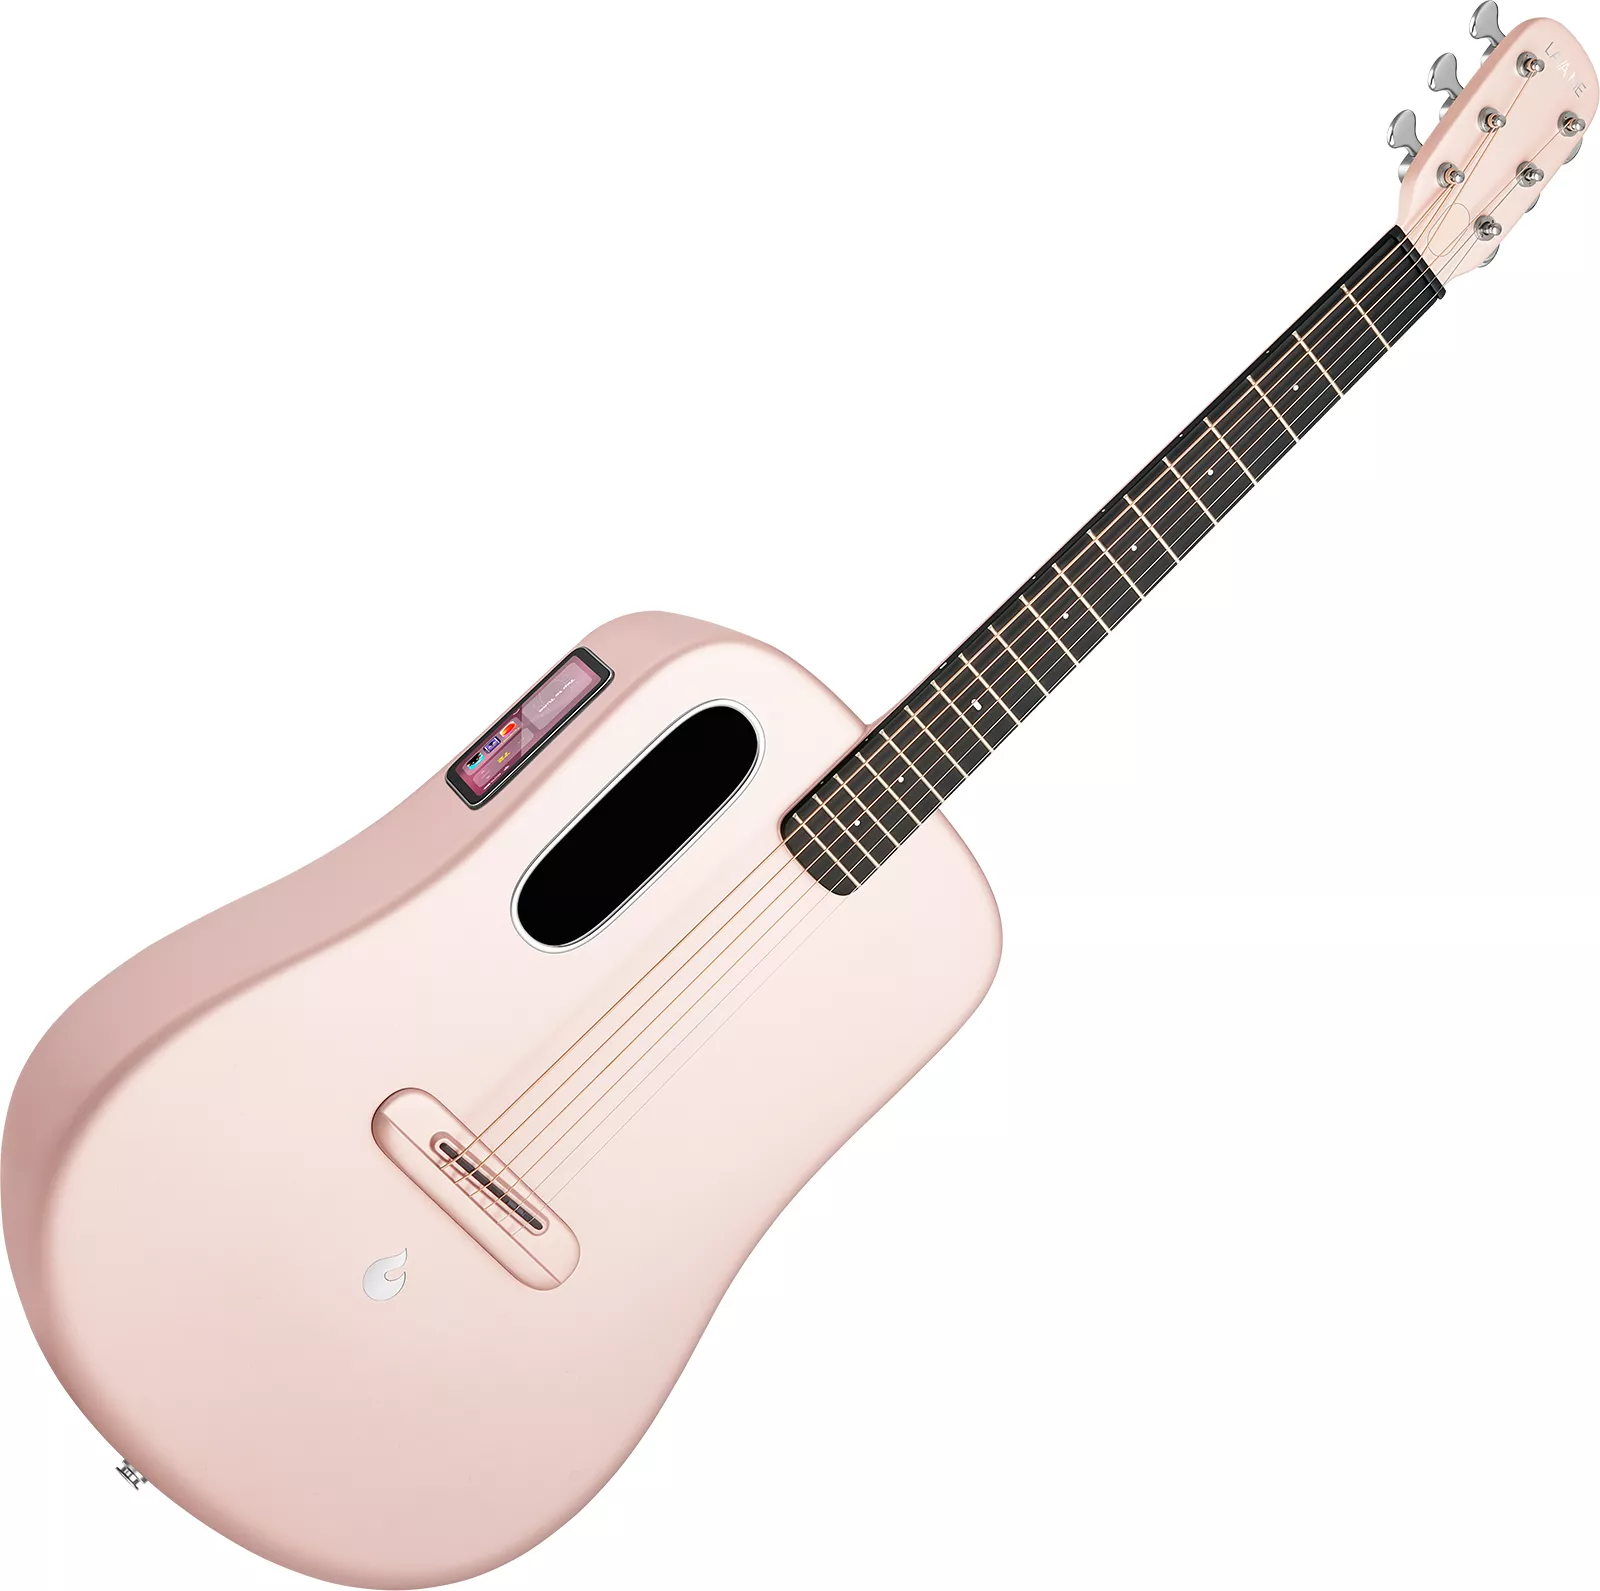 Lava ME 4 Carbon 38 +Airflow Bag - pink Travel acoustic guitar